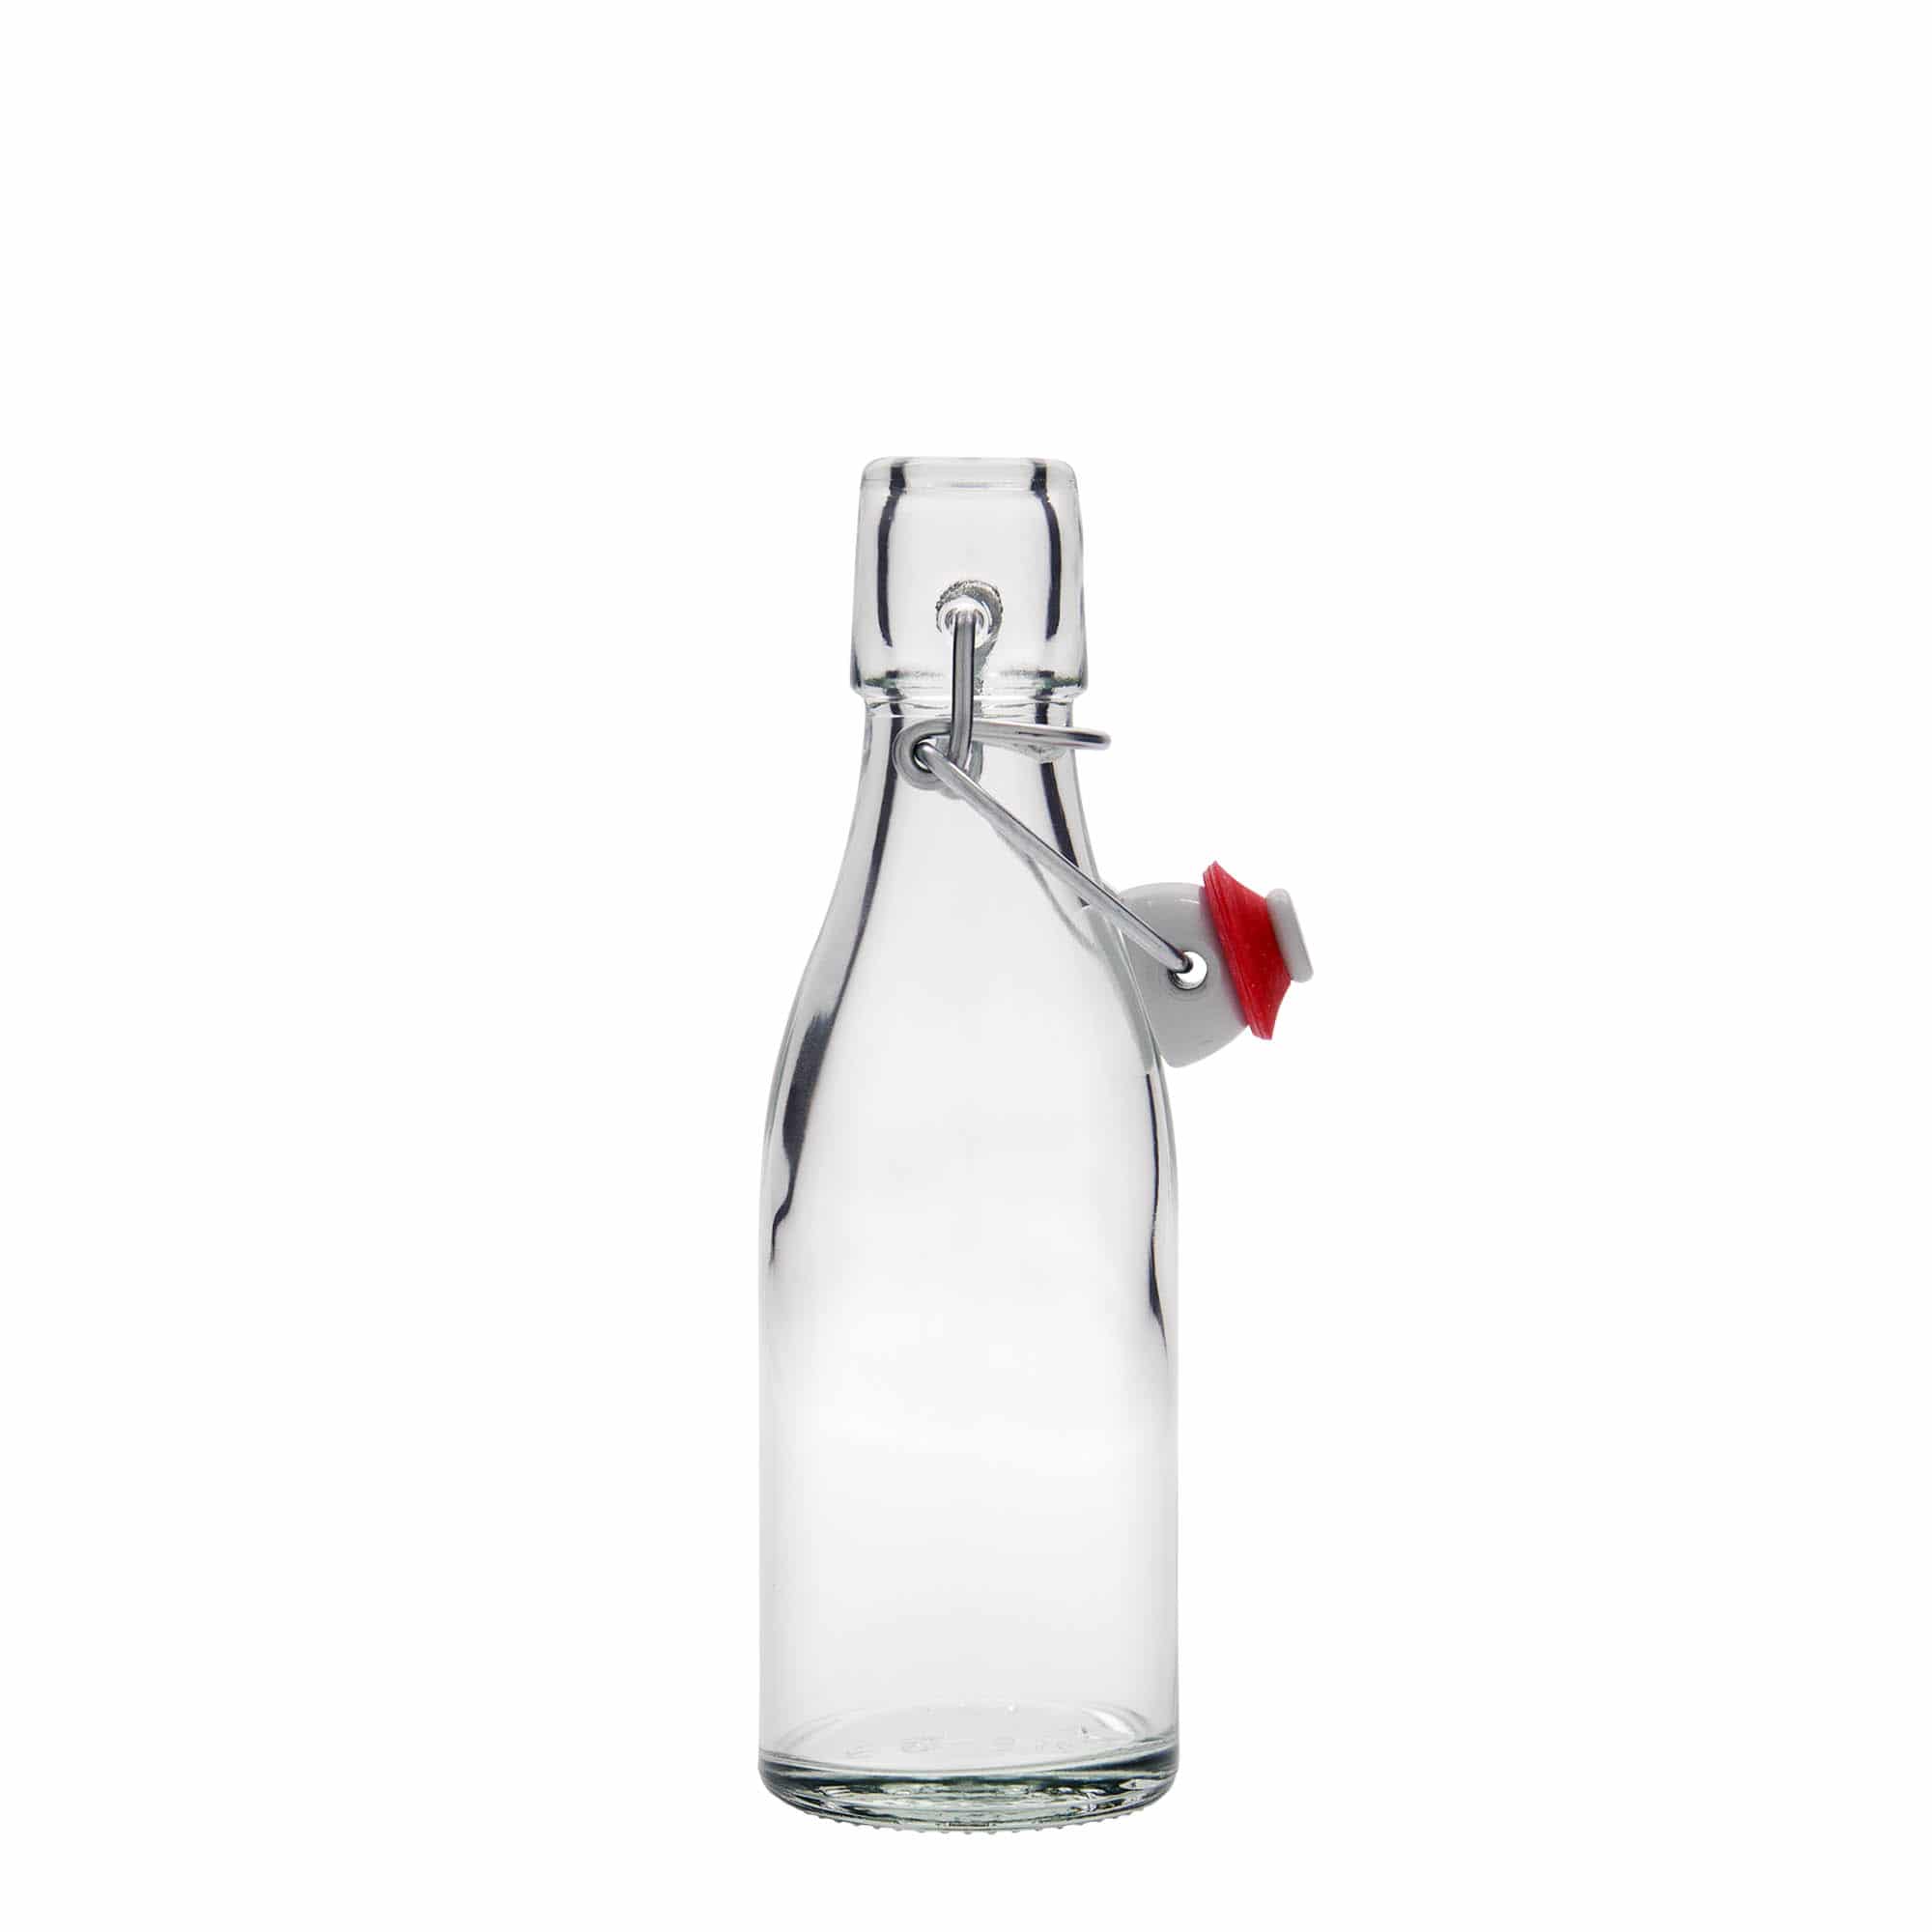 200 ml glass bottle 'Paul', closure: swing top